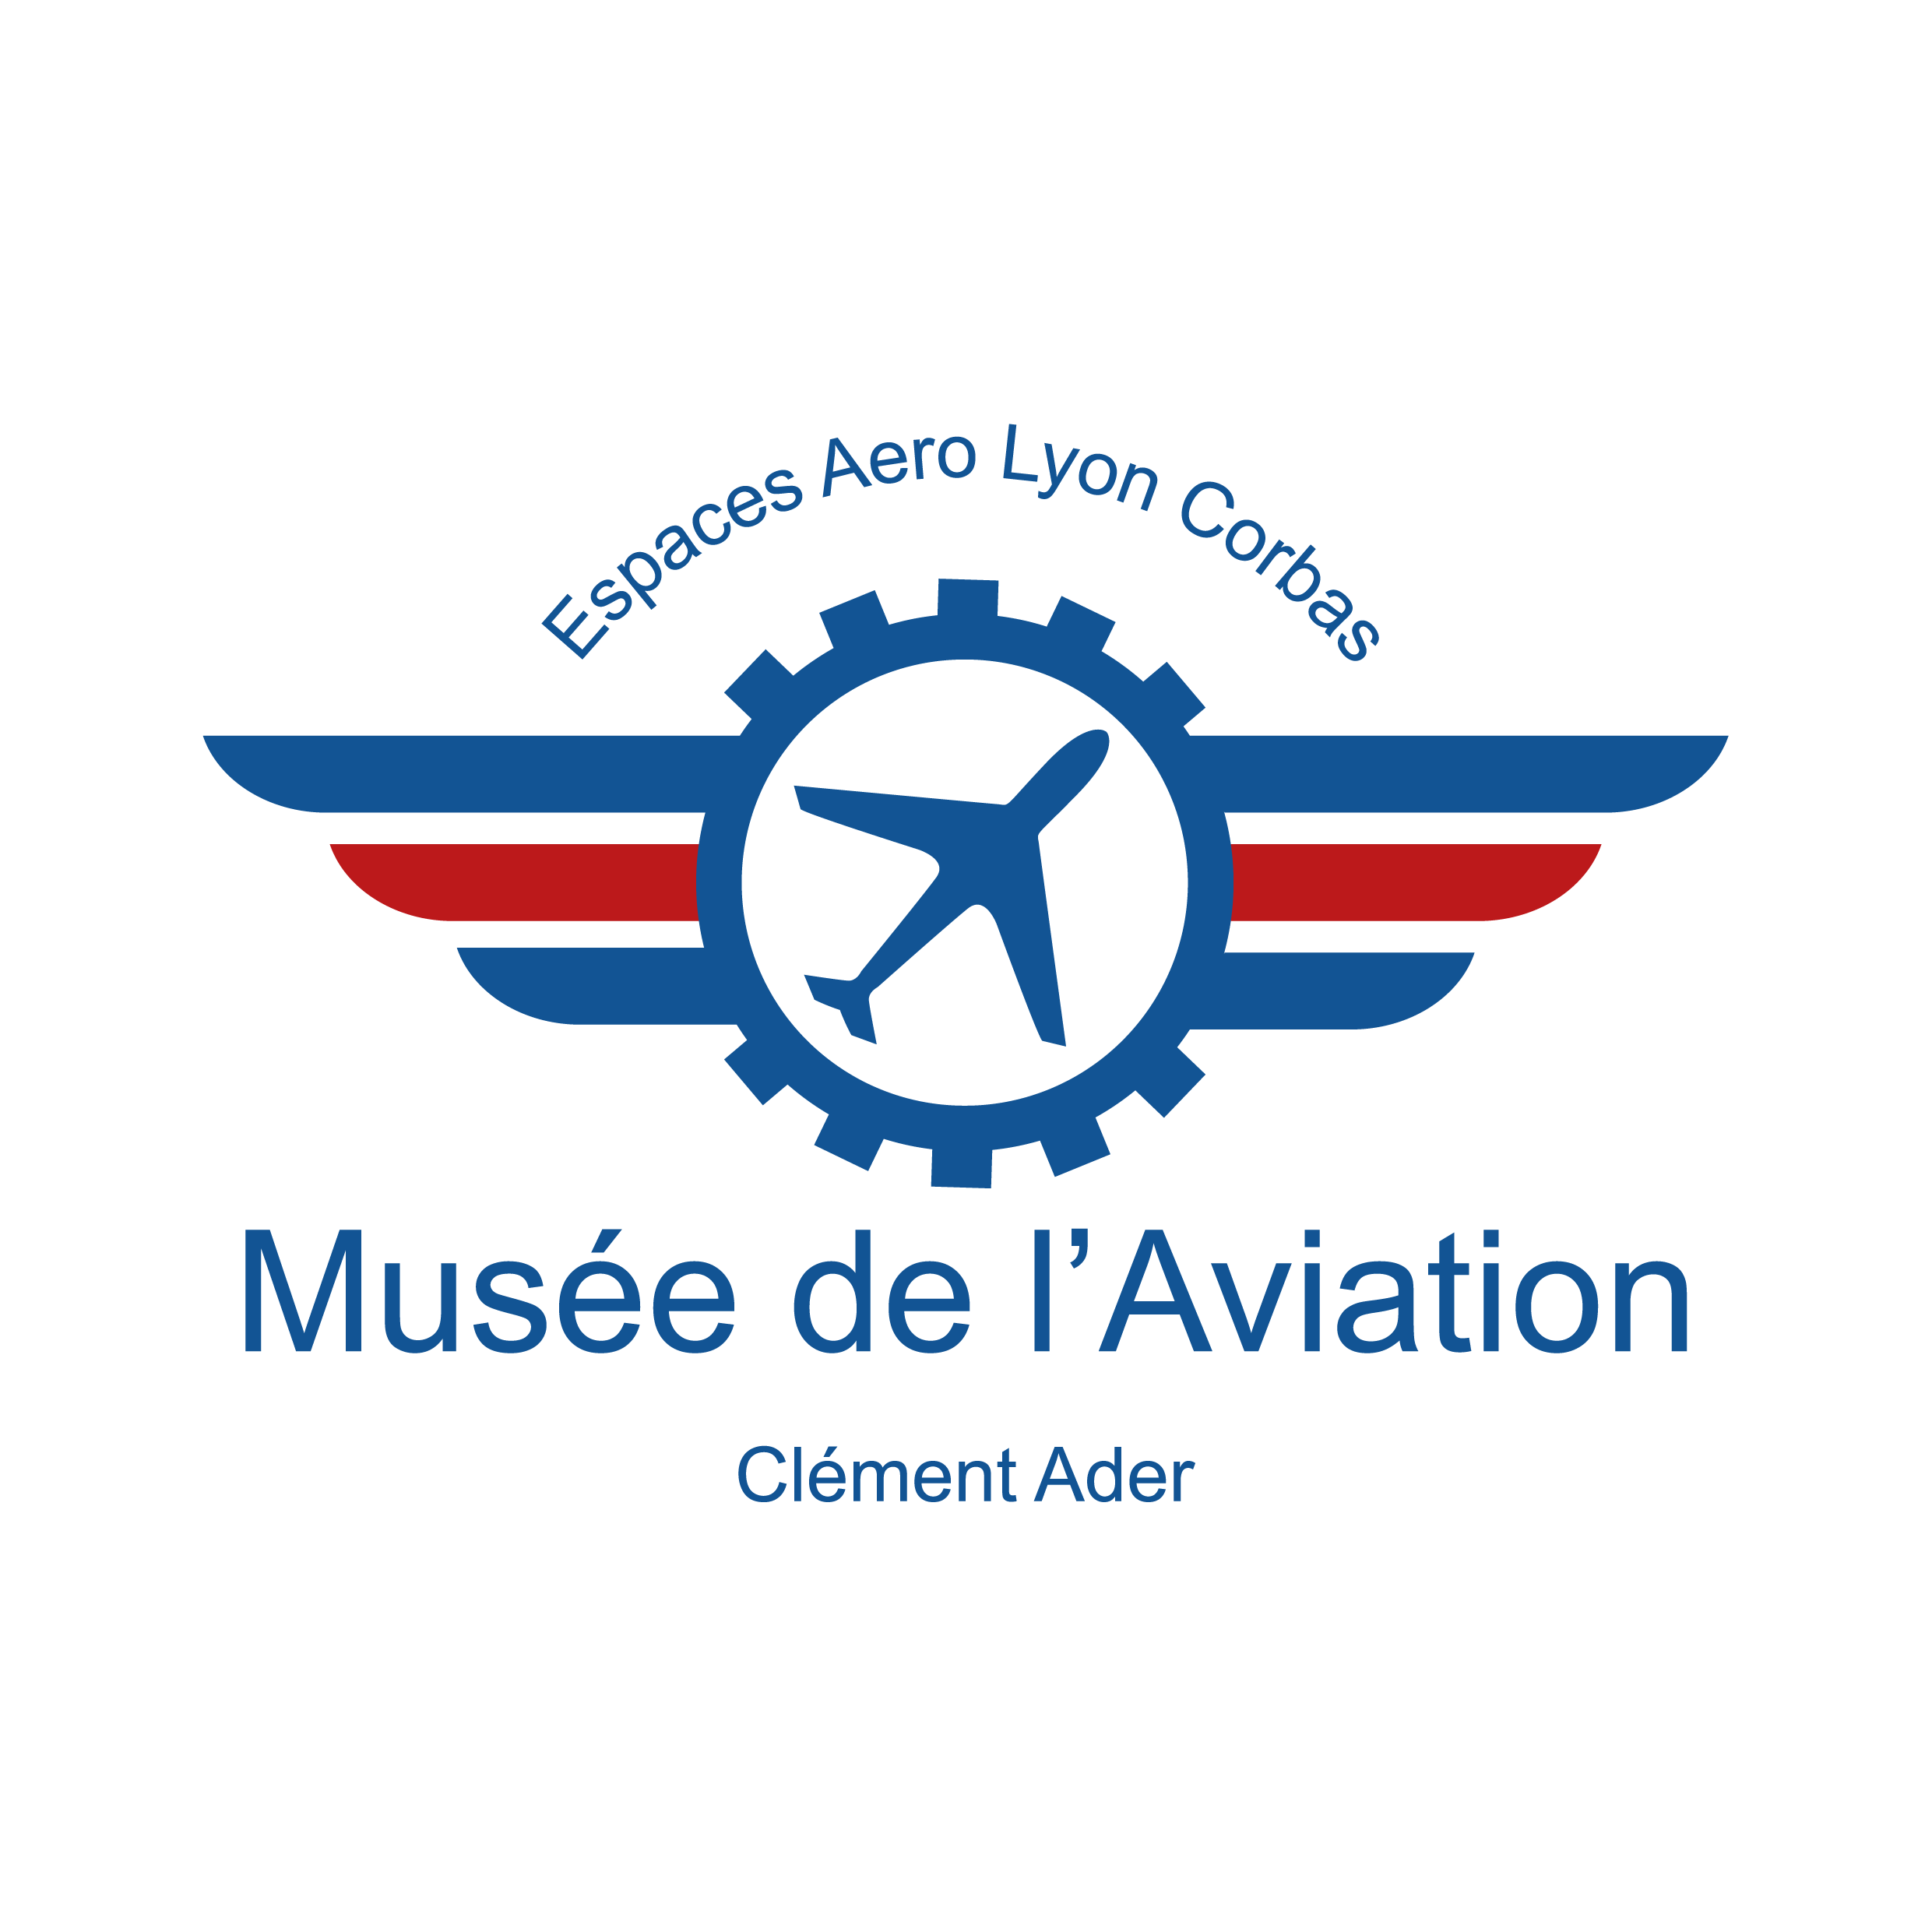 Musée de l'aviation